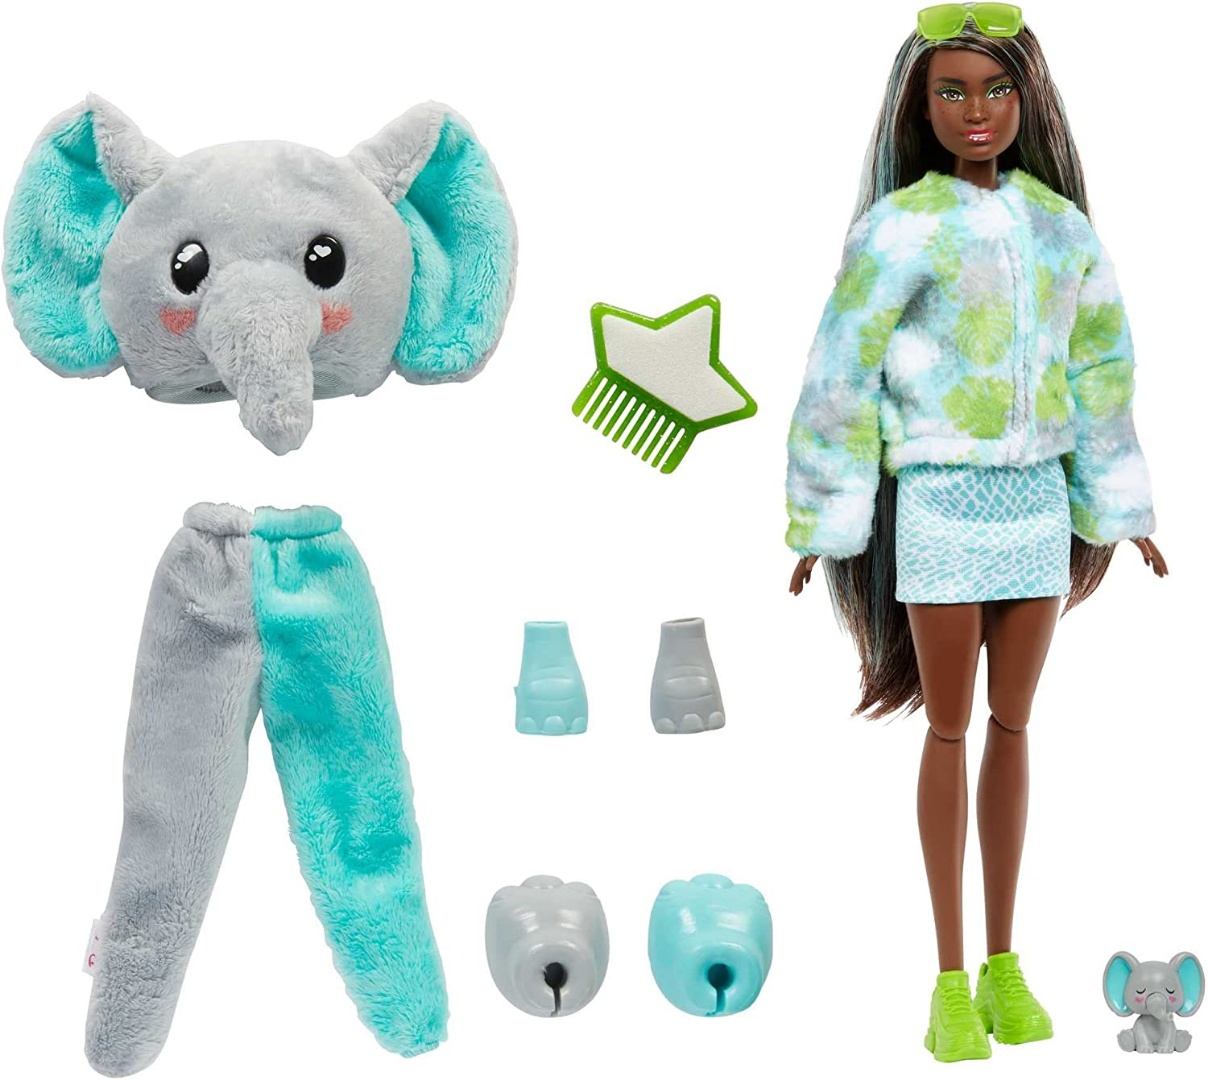 BARBIE - Cutie Reveal Peluche de Elefante - HKP97 Barbie Muñecas Clasicas